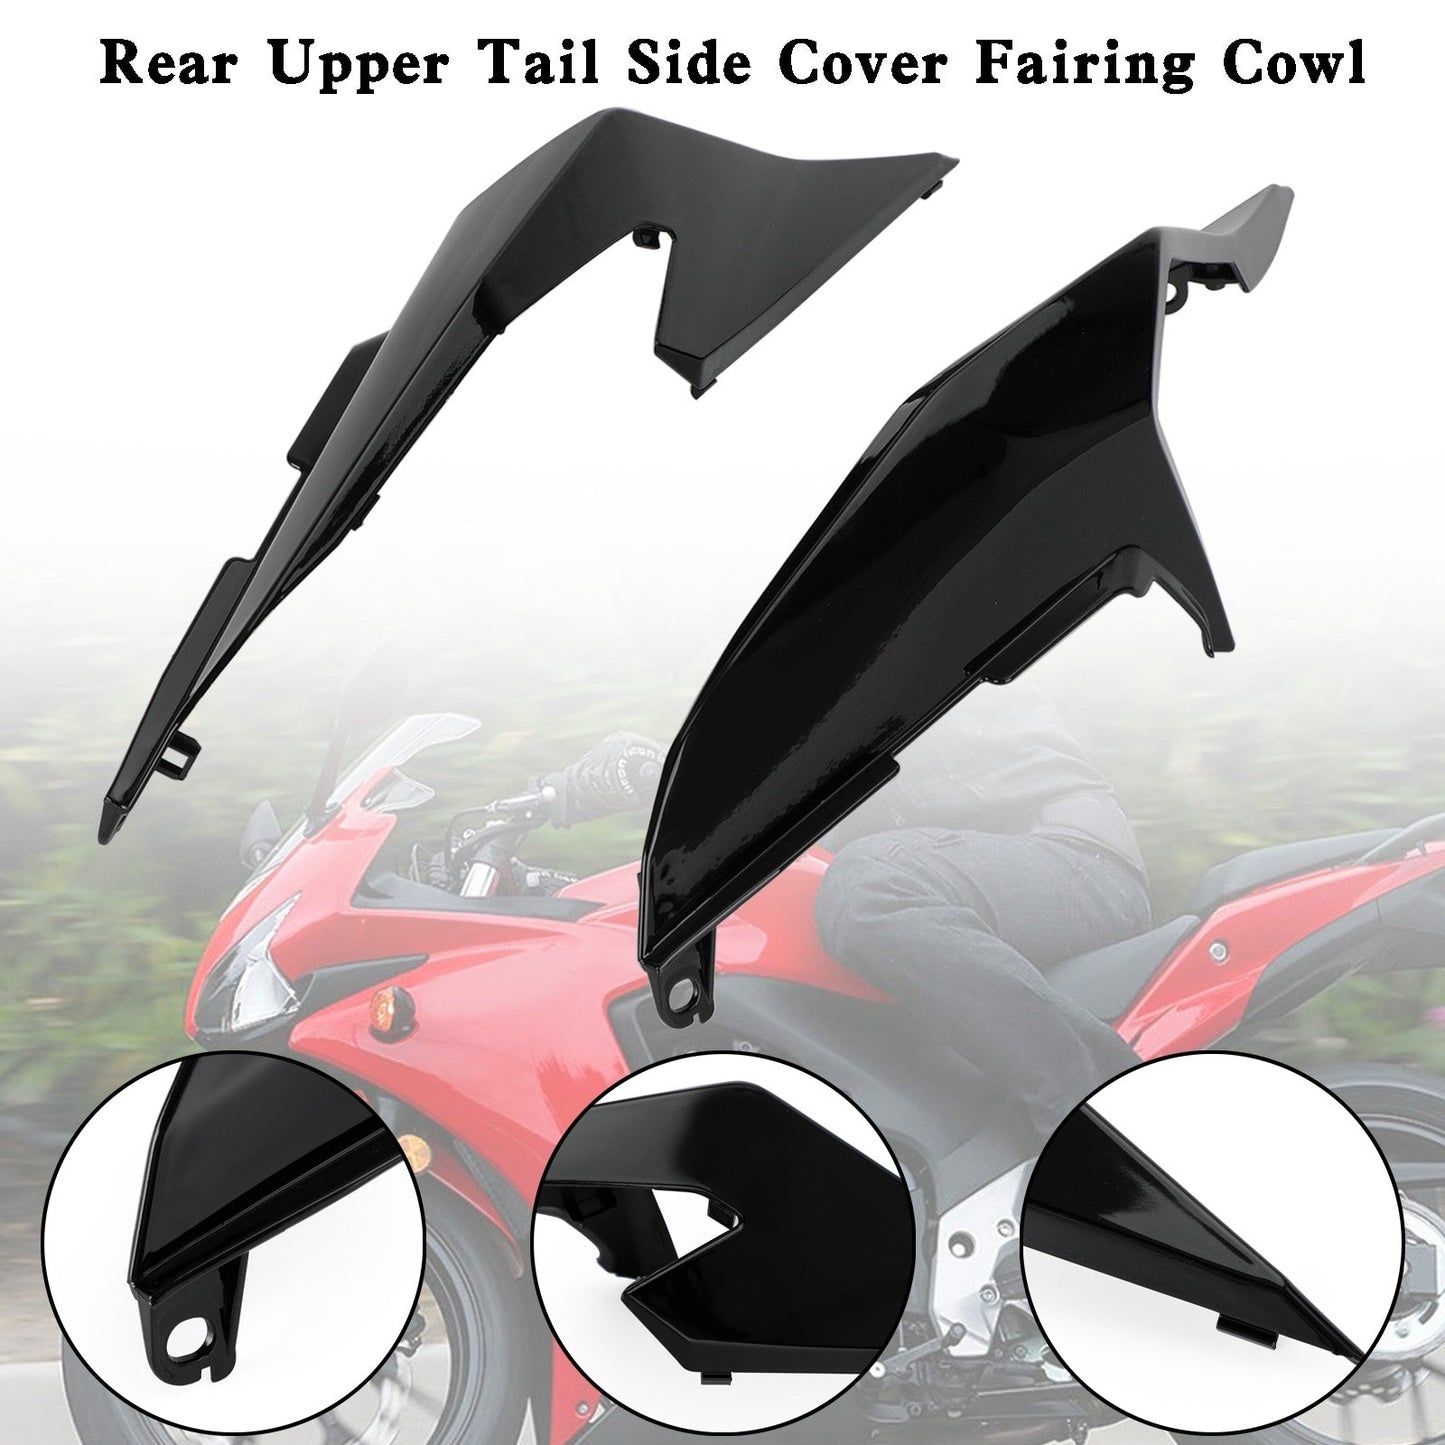 Rear Upper Tail Side Cover Fairing Cowl For Honda CBR500R 2019-2021 Black